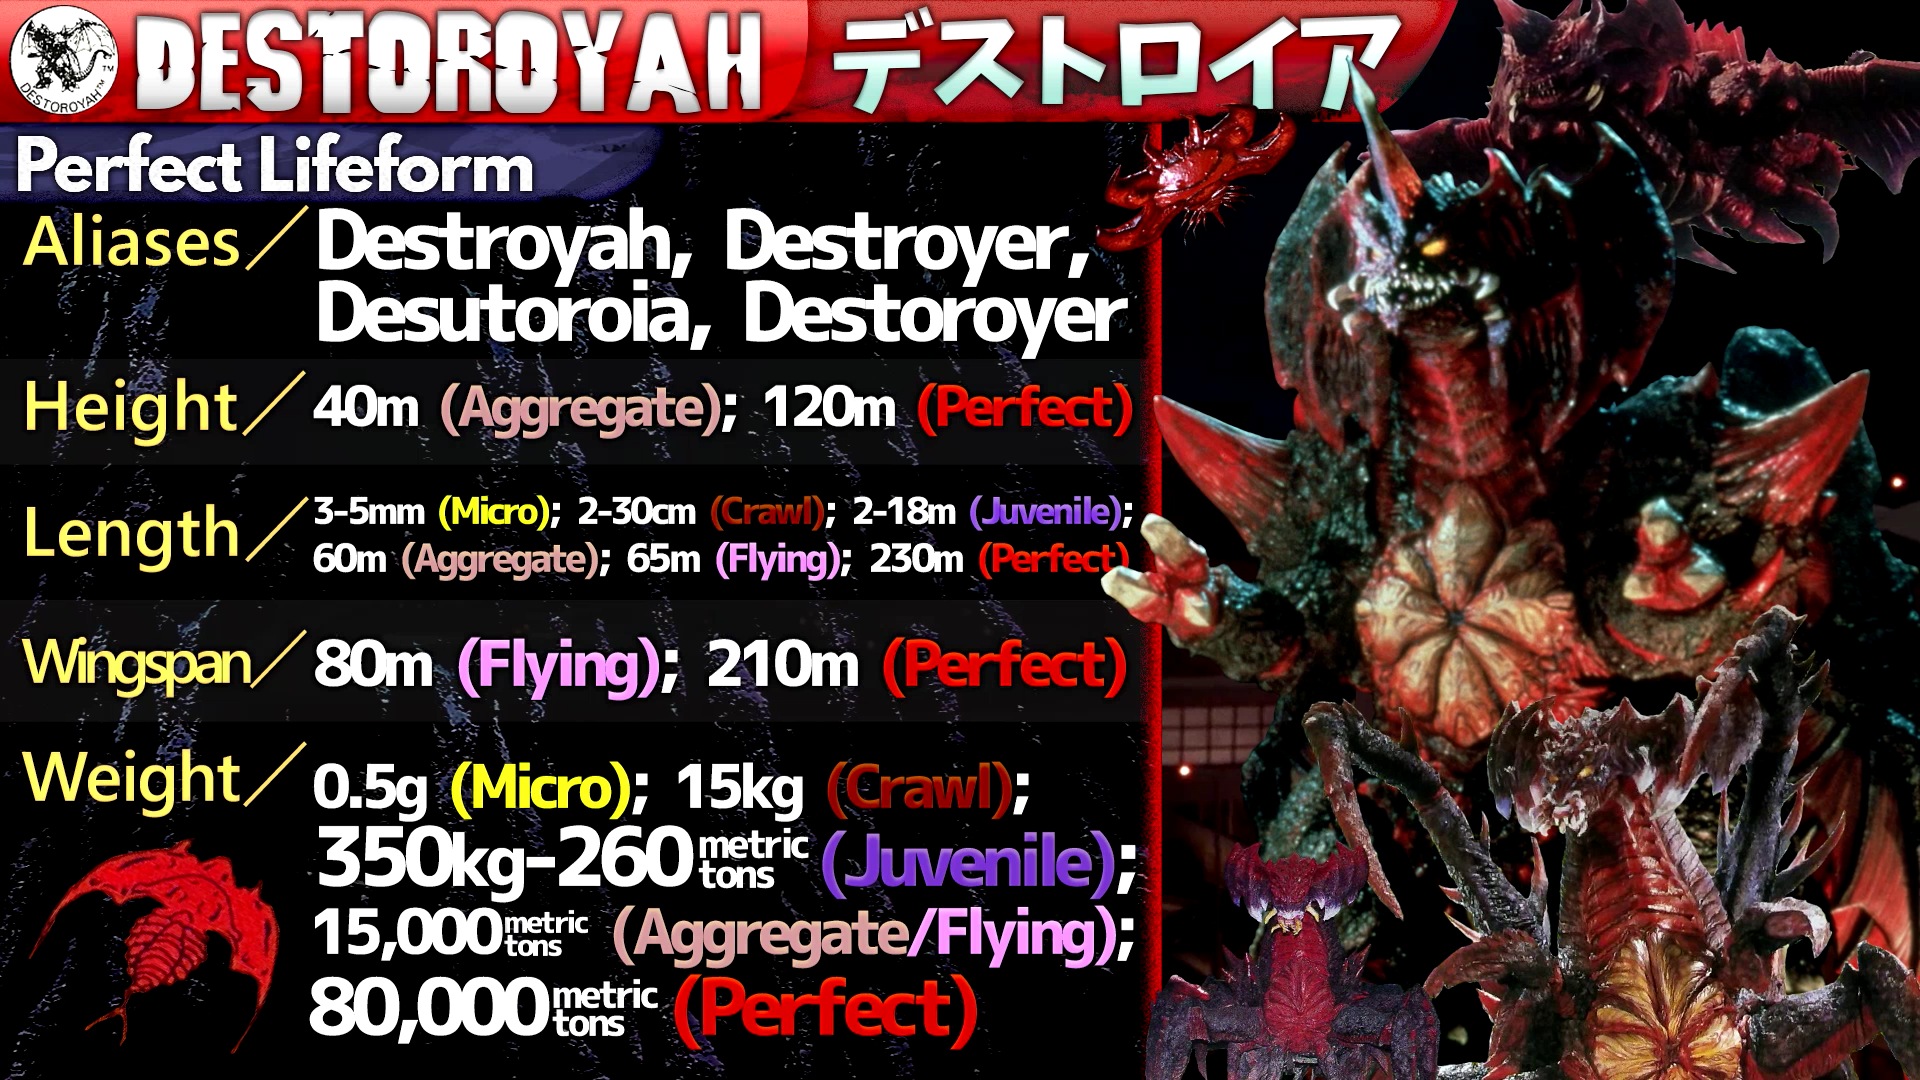 Destoroyah's Profile 